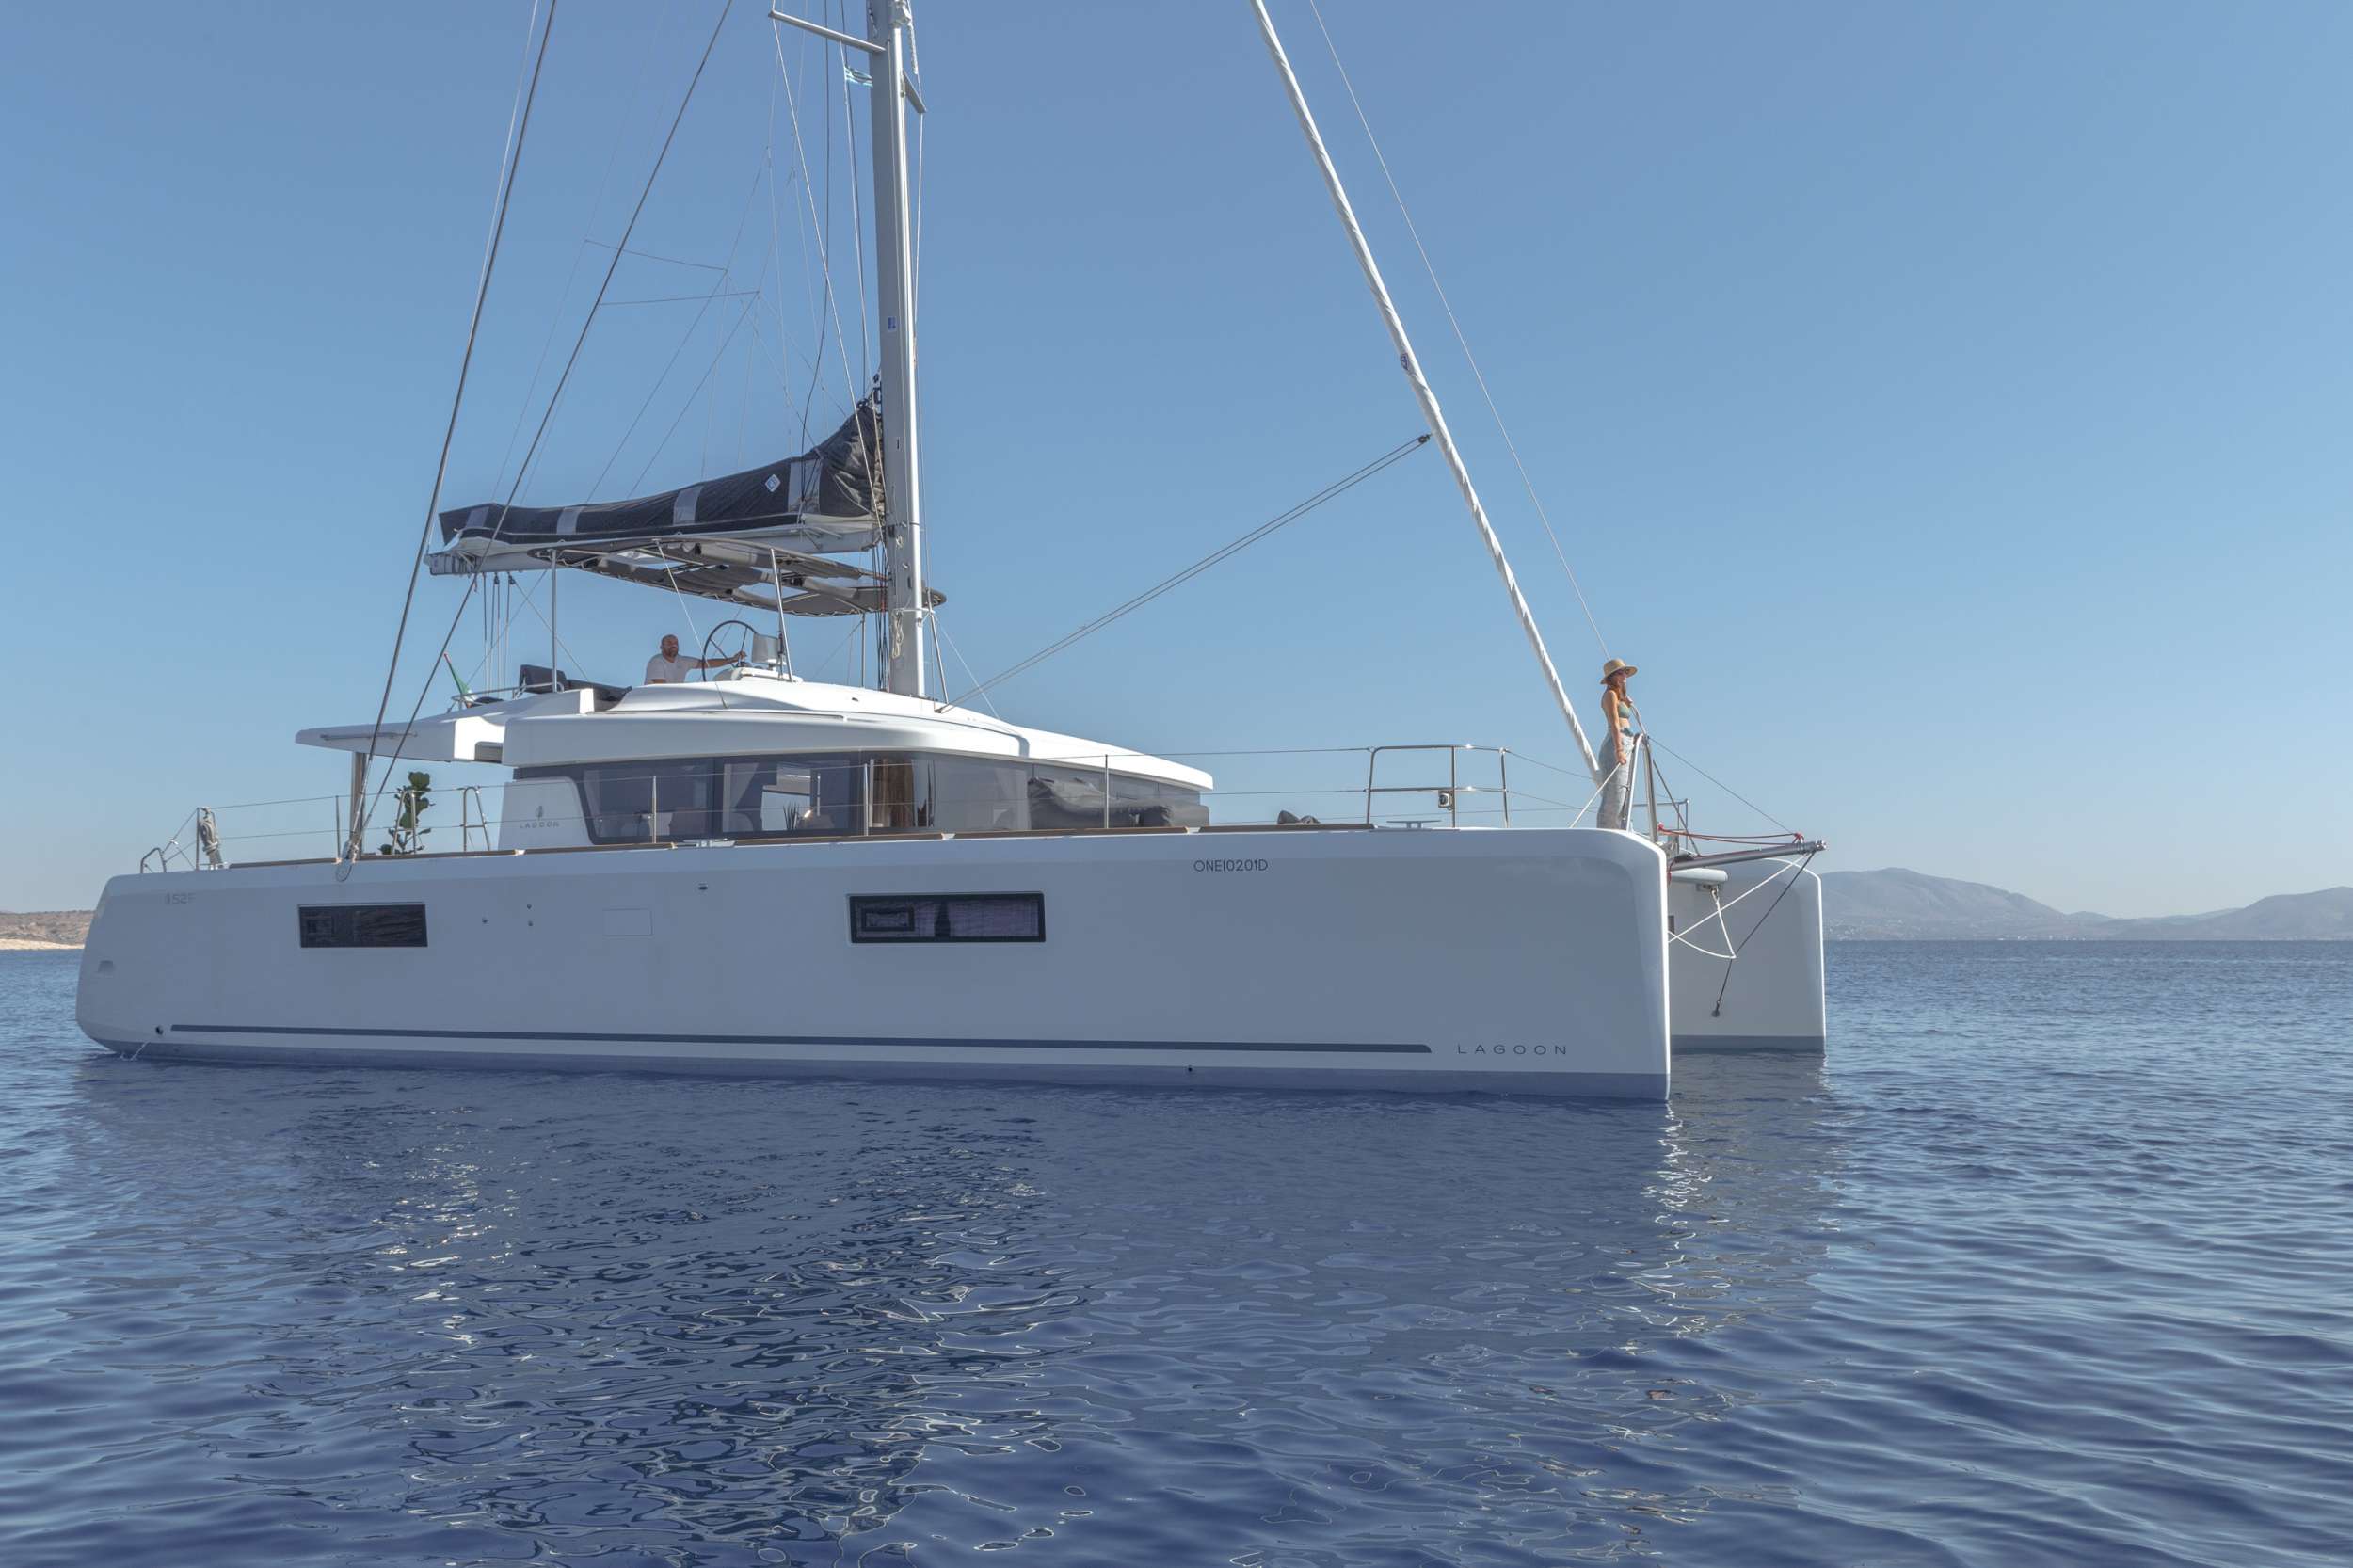 ONEIDA - Yacht Charter Mykonos & Boat hire in Greece 1